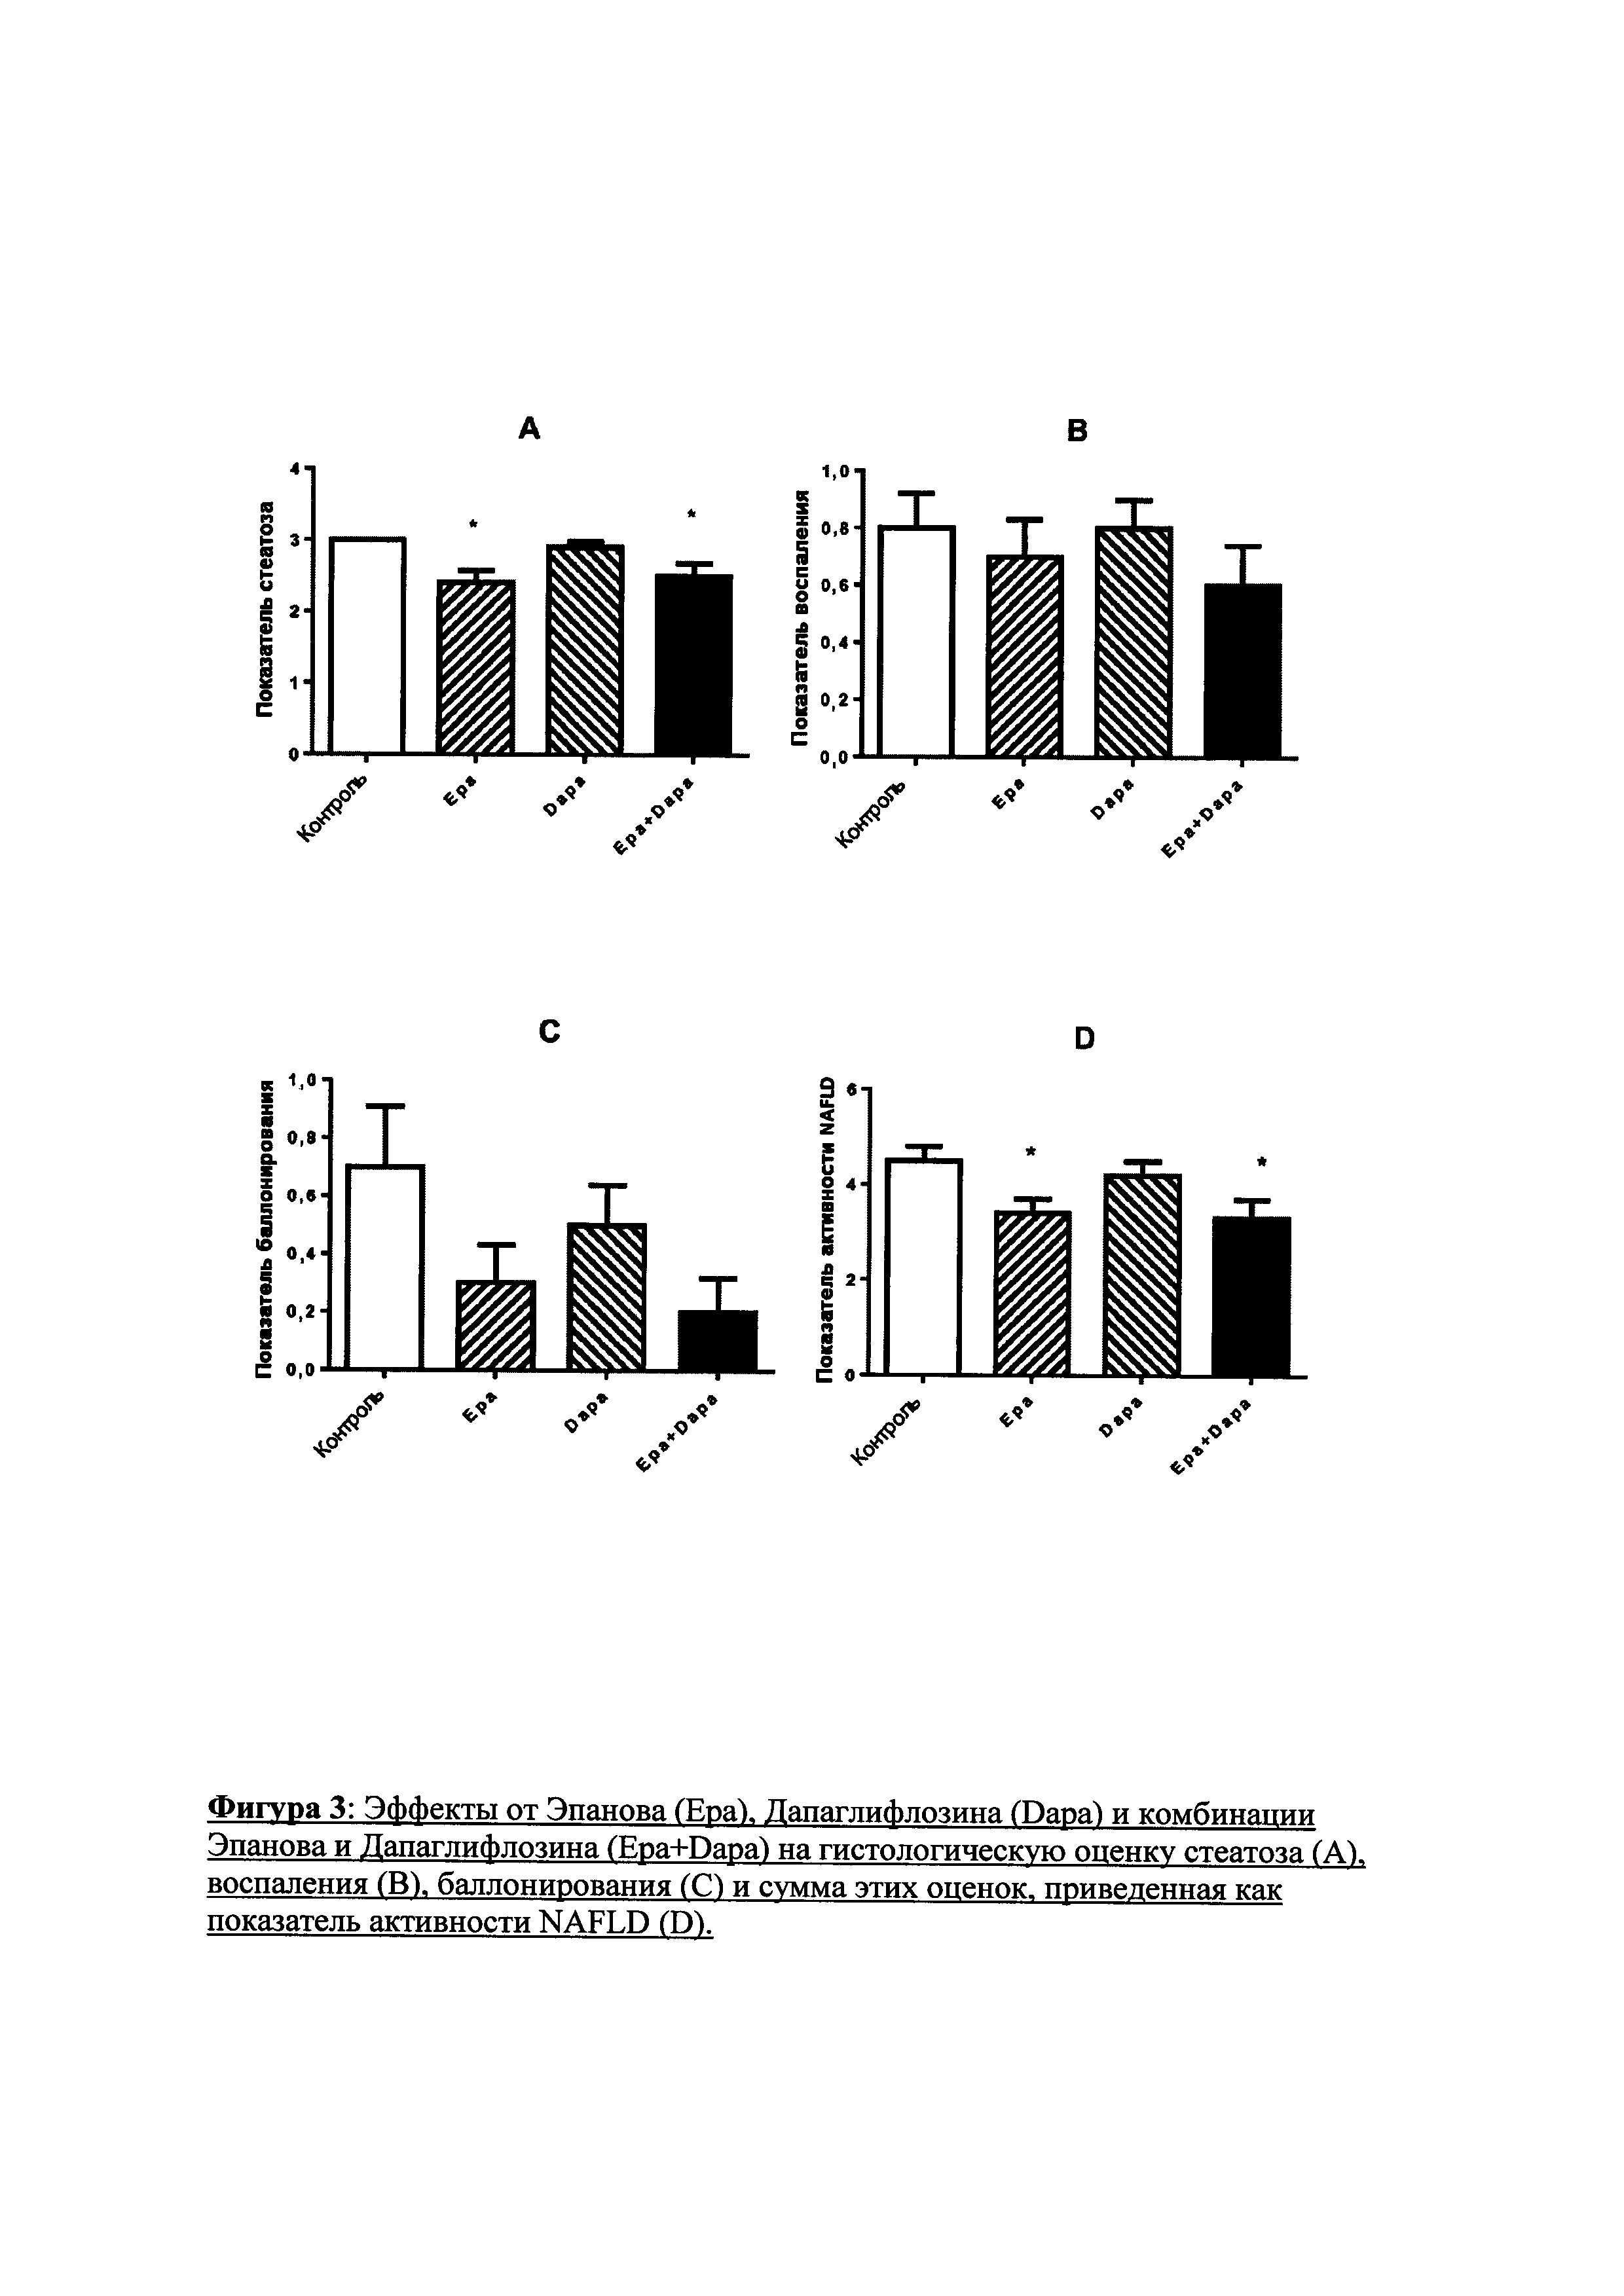 Комбинация омега-3 жирной кислоты и SGLT-2 ингибитора для лечения болезней печени